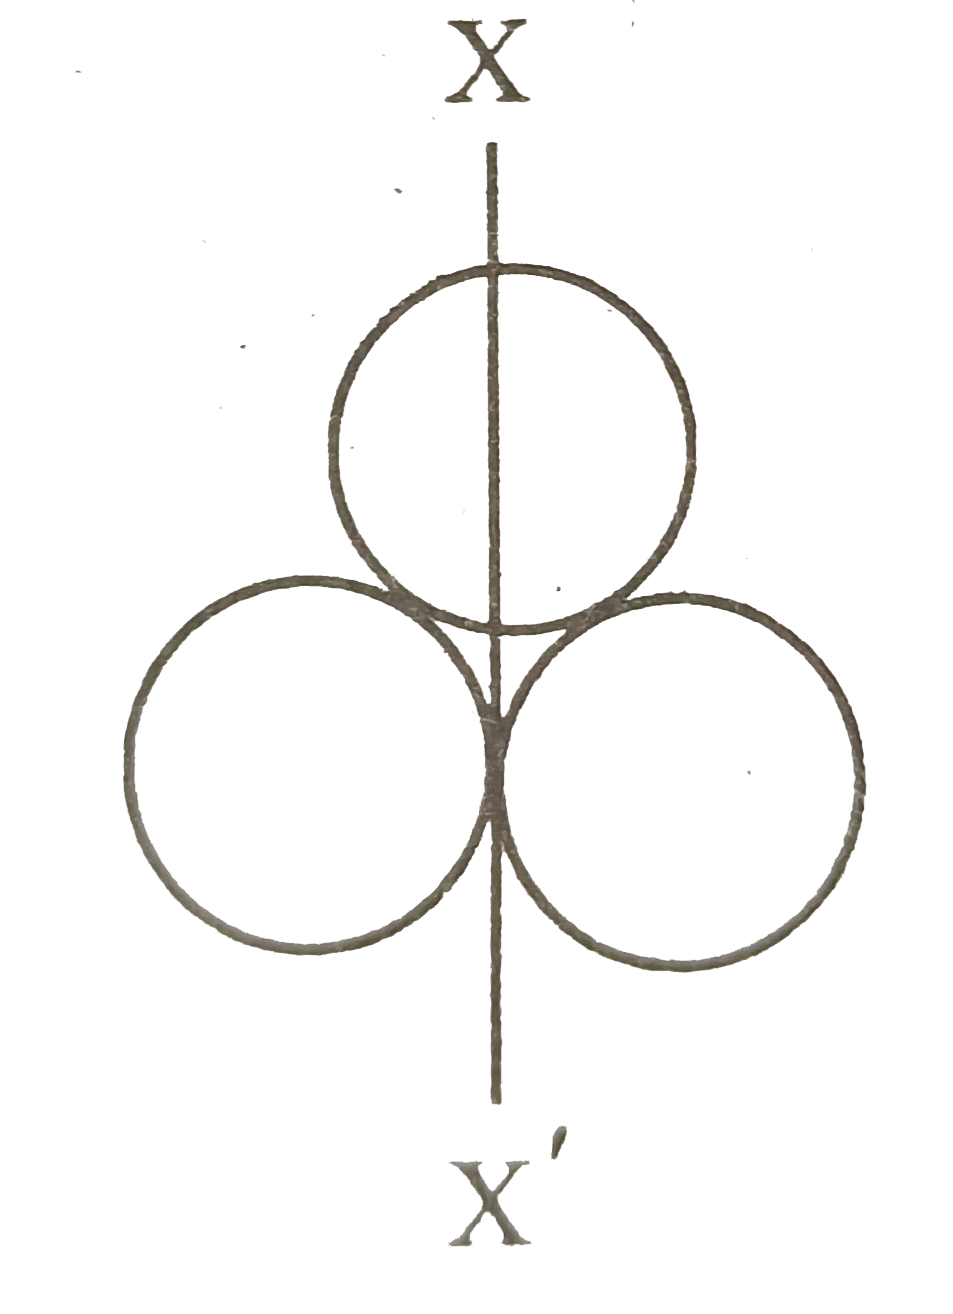 तीन सर्वसम गोलीय खोखले गोलों में से प्रत्येक का द्रव्यमान m तथा त्रिज्या r है । इन्हें चित्र में दिखाए गए अनुसार रखा गया है । XX' एक अक्ष है, जो दो गोलों को स्पर्श करता है तथा तीसरे गोले के व्यास से होकर गुजरता है । XX' अक्ष के परितः इस निकाय का  जड़त्व आघूर्ण होगा-